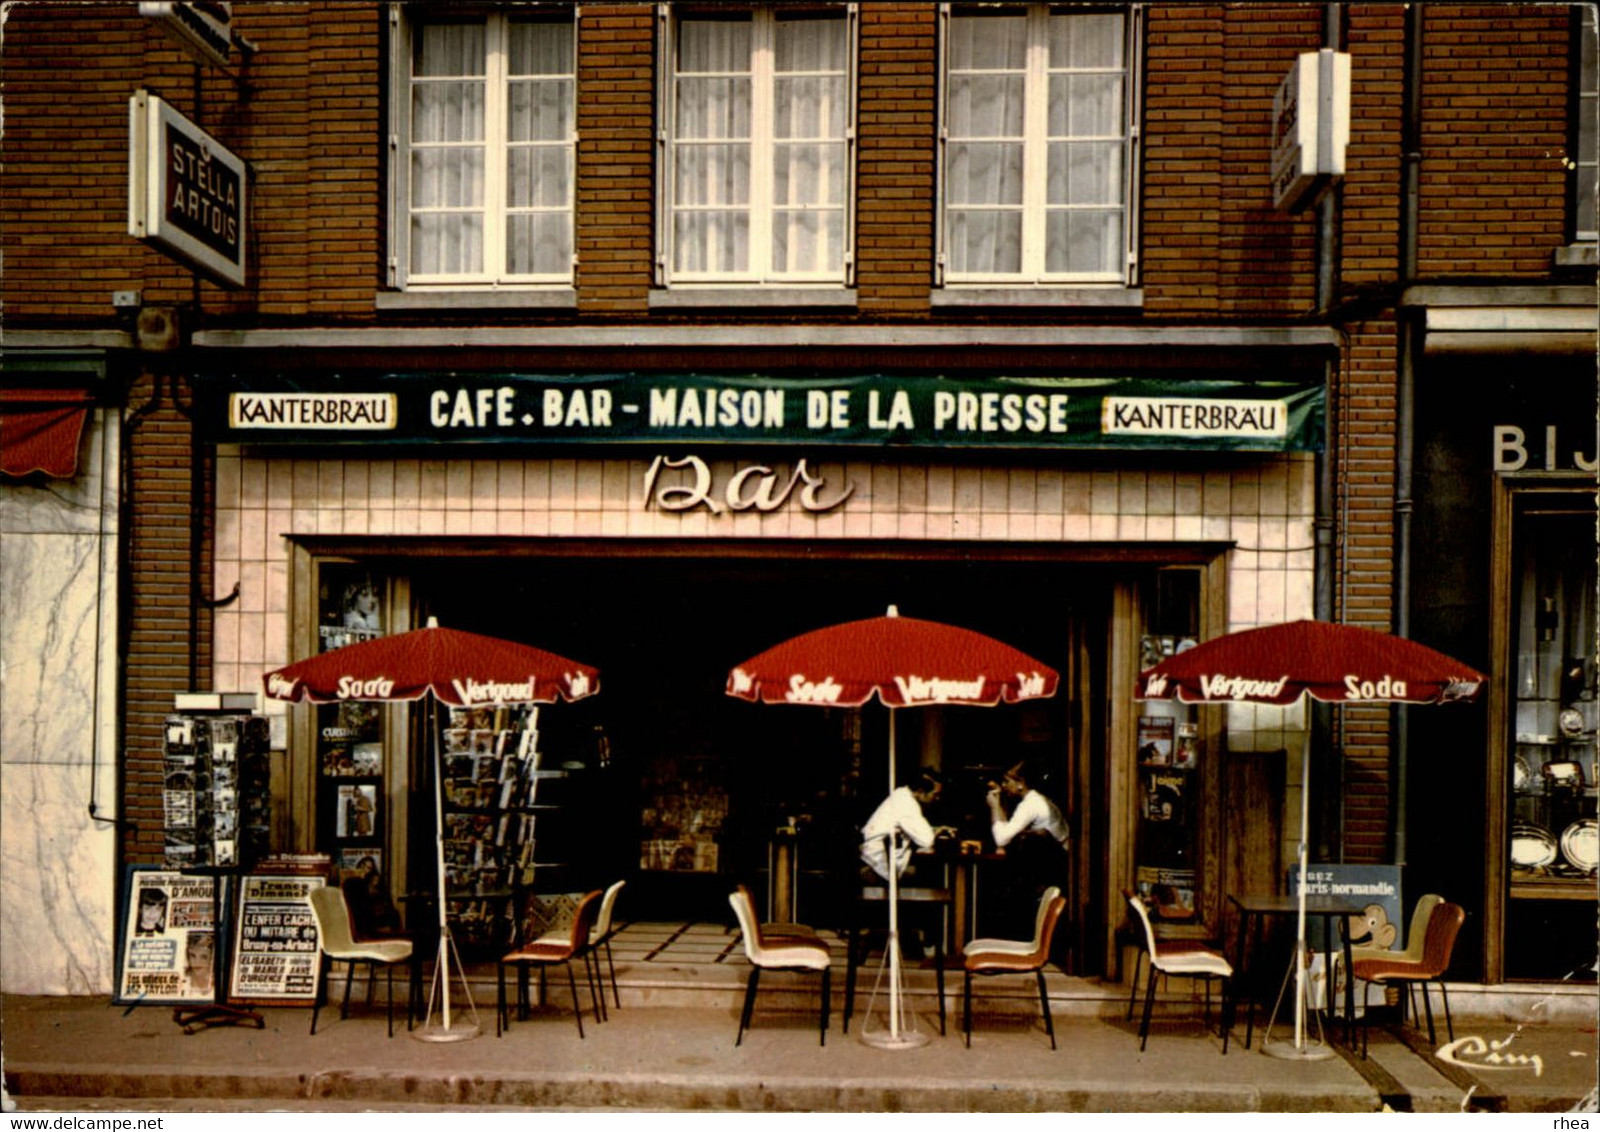 76 - LONDINIERES - Maison De La Presse - Bar - Cartes Postales - Londinières